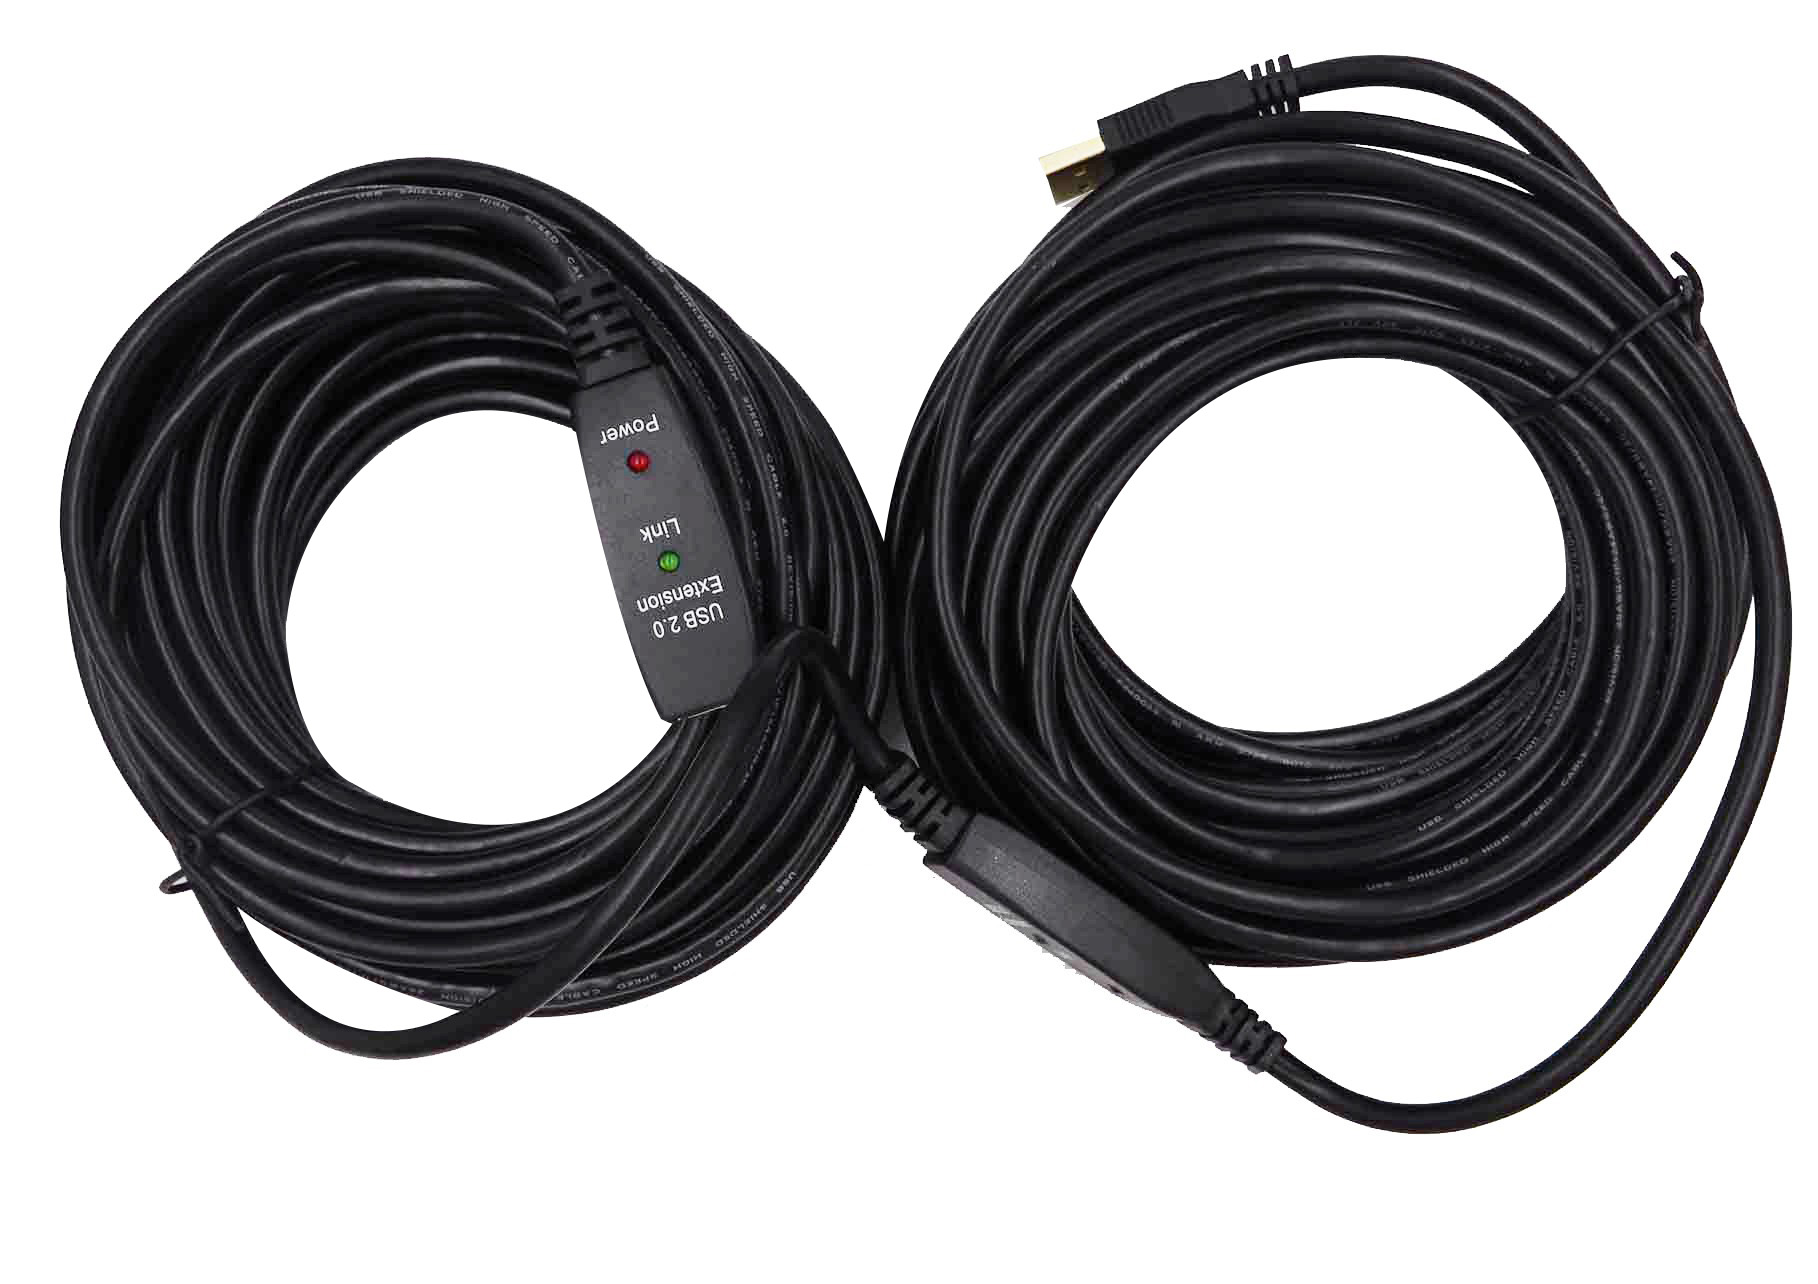 Rallonge USB 2.0 A-A M / F Noir - 1.8m - 2090072 • Neklan